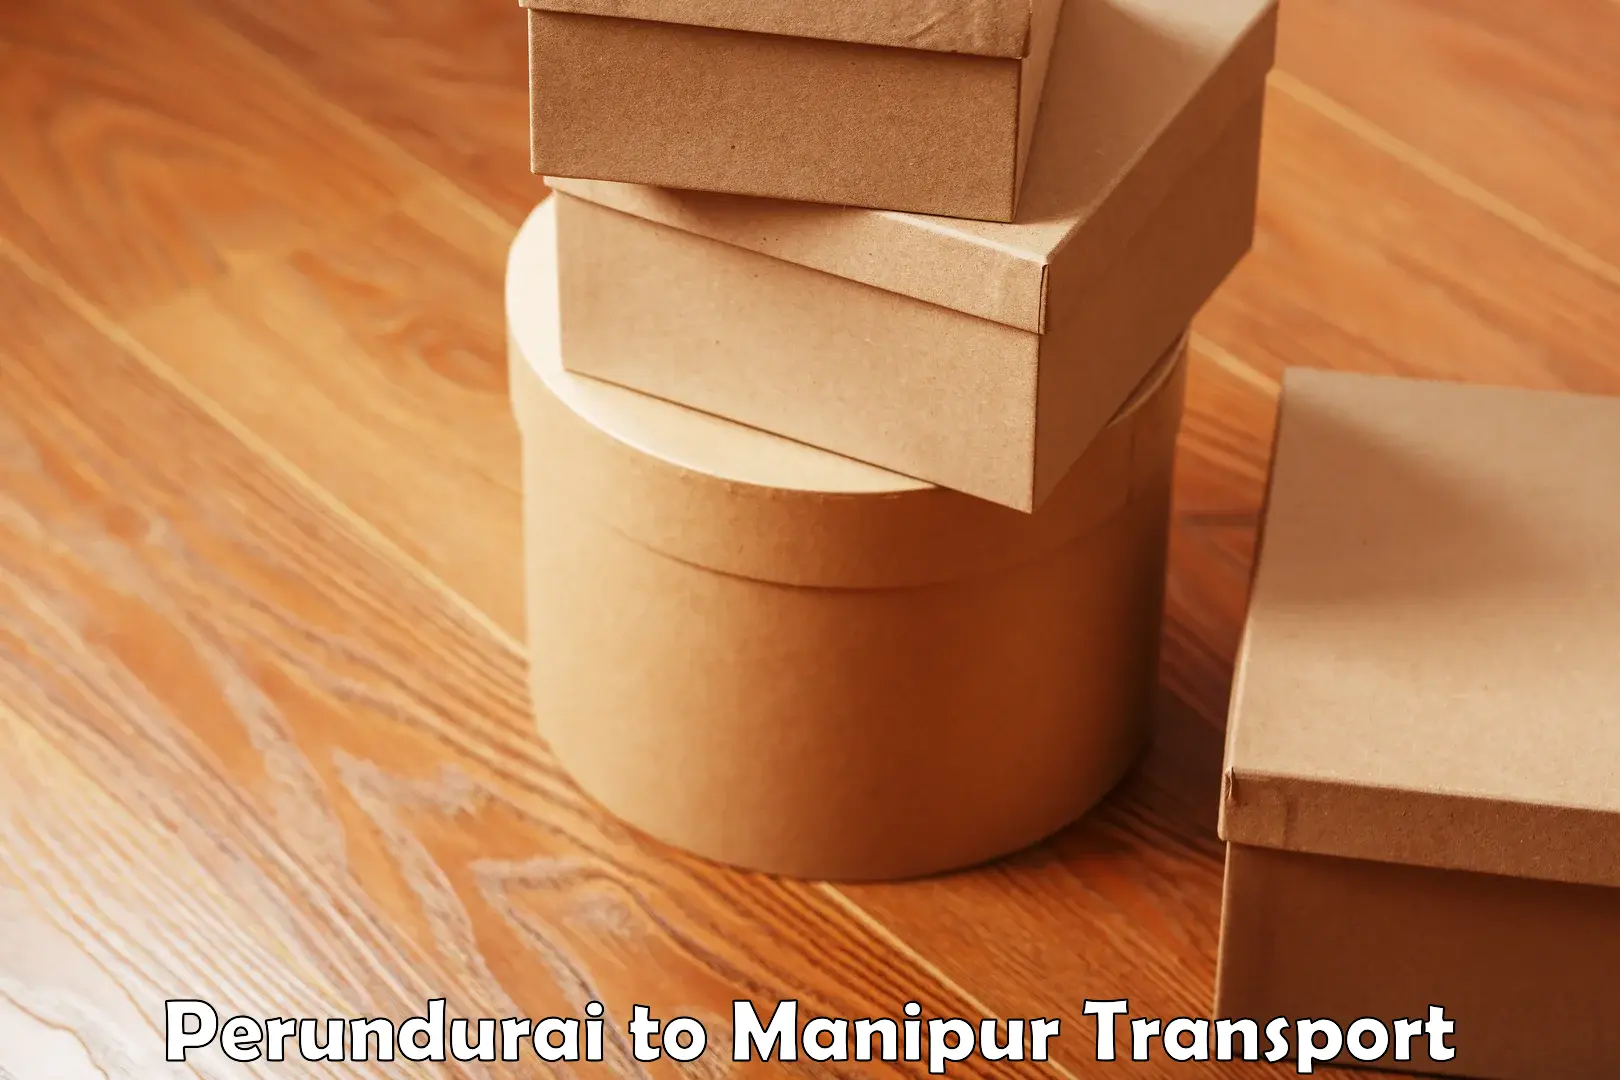 Furniture transport service Perundurai to NIT Manipur